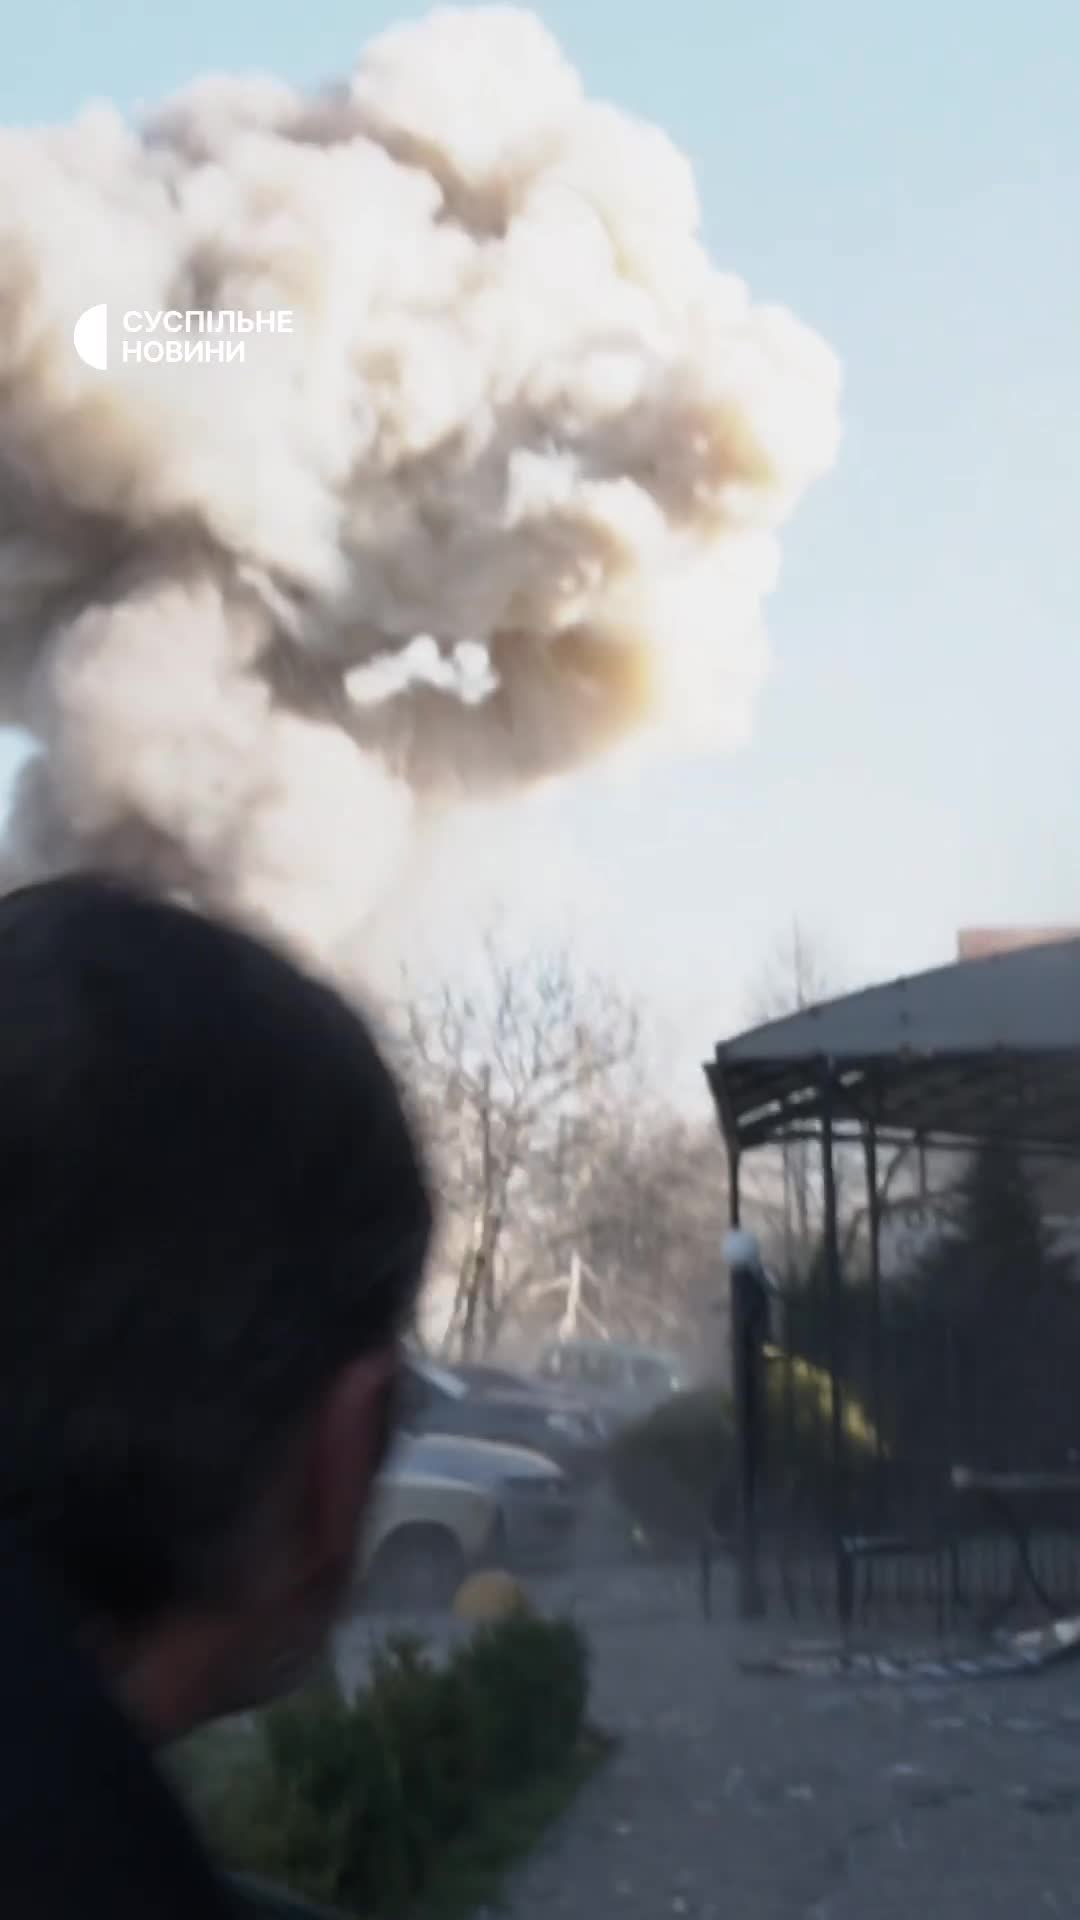 Ataque duplo com mísseis em Zaporizhzhia enquanto equipes de resgate, policiais e jornalistas estavam no local